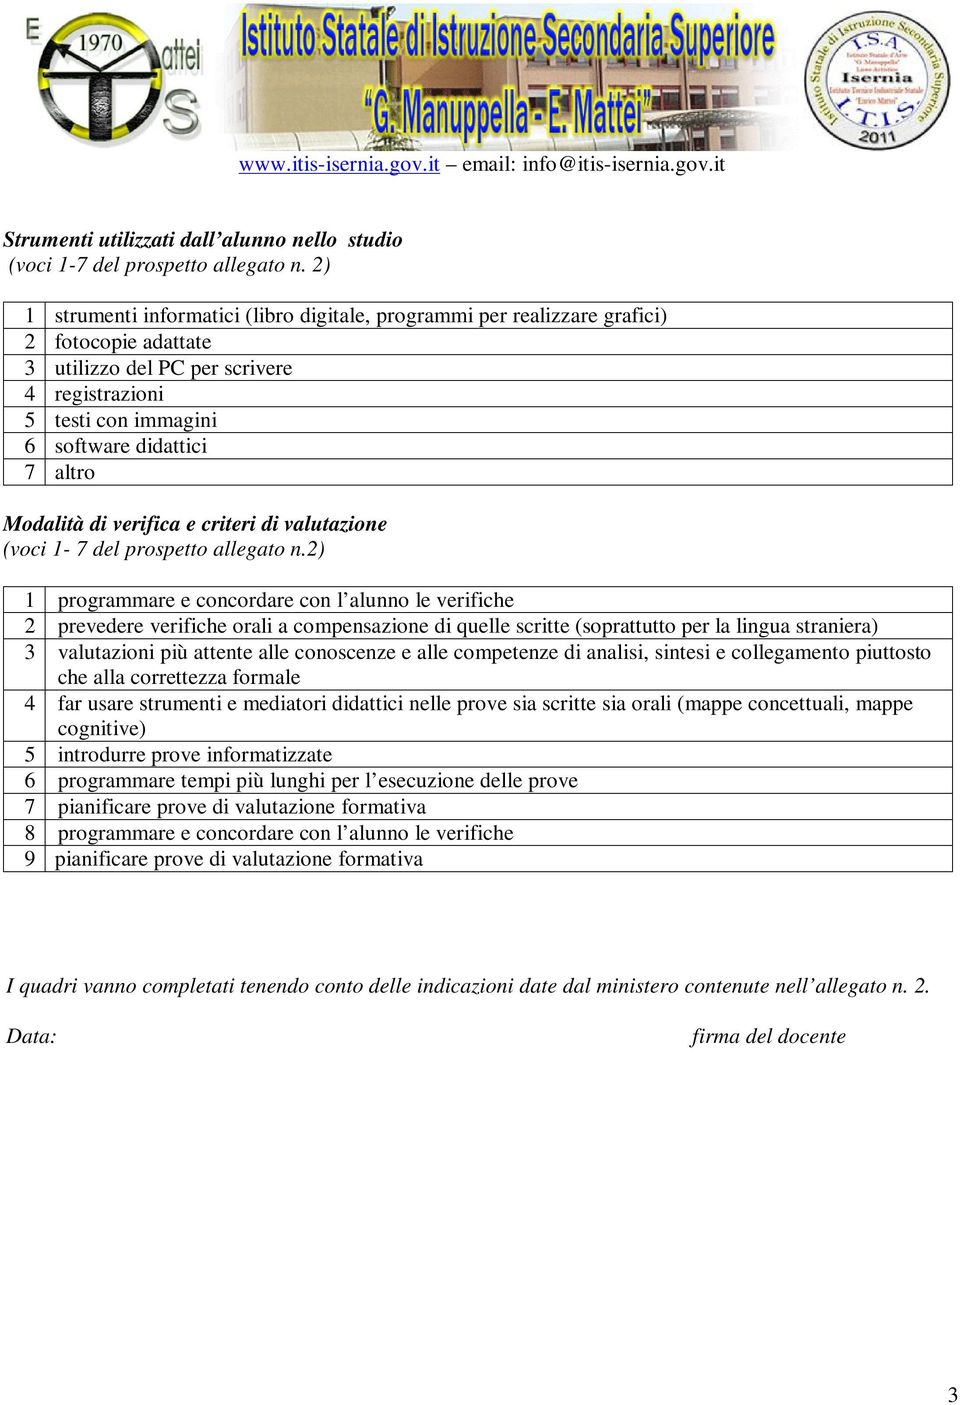 Modalità di verifica e criteri di valutazione (voci 1-7 del prospetto allegato n.